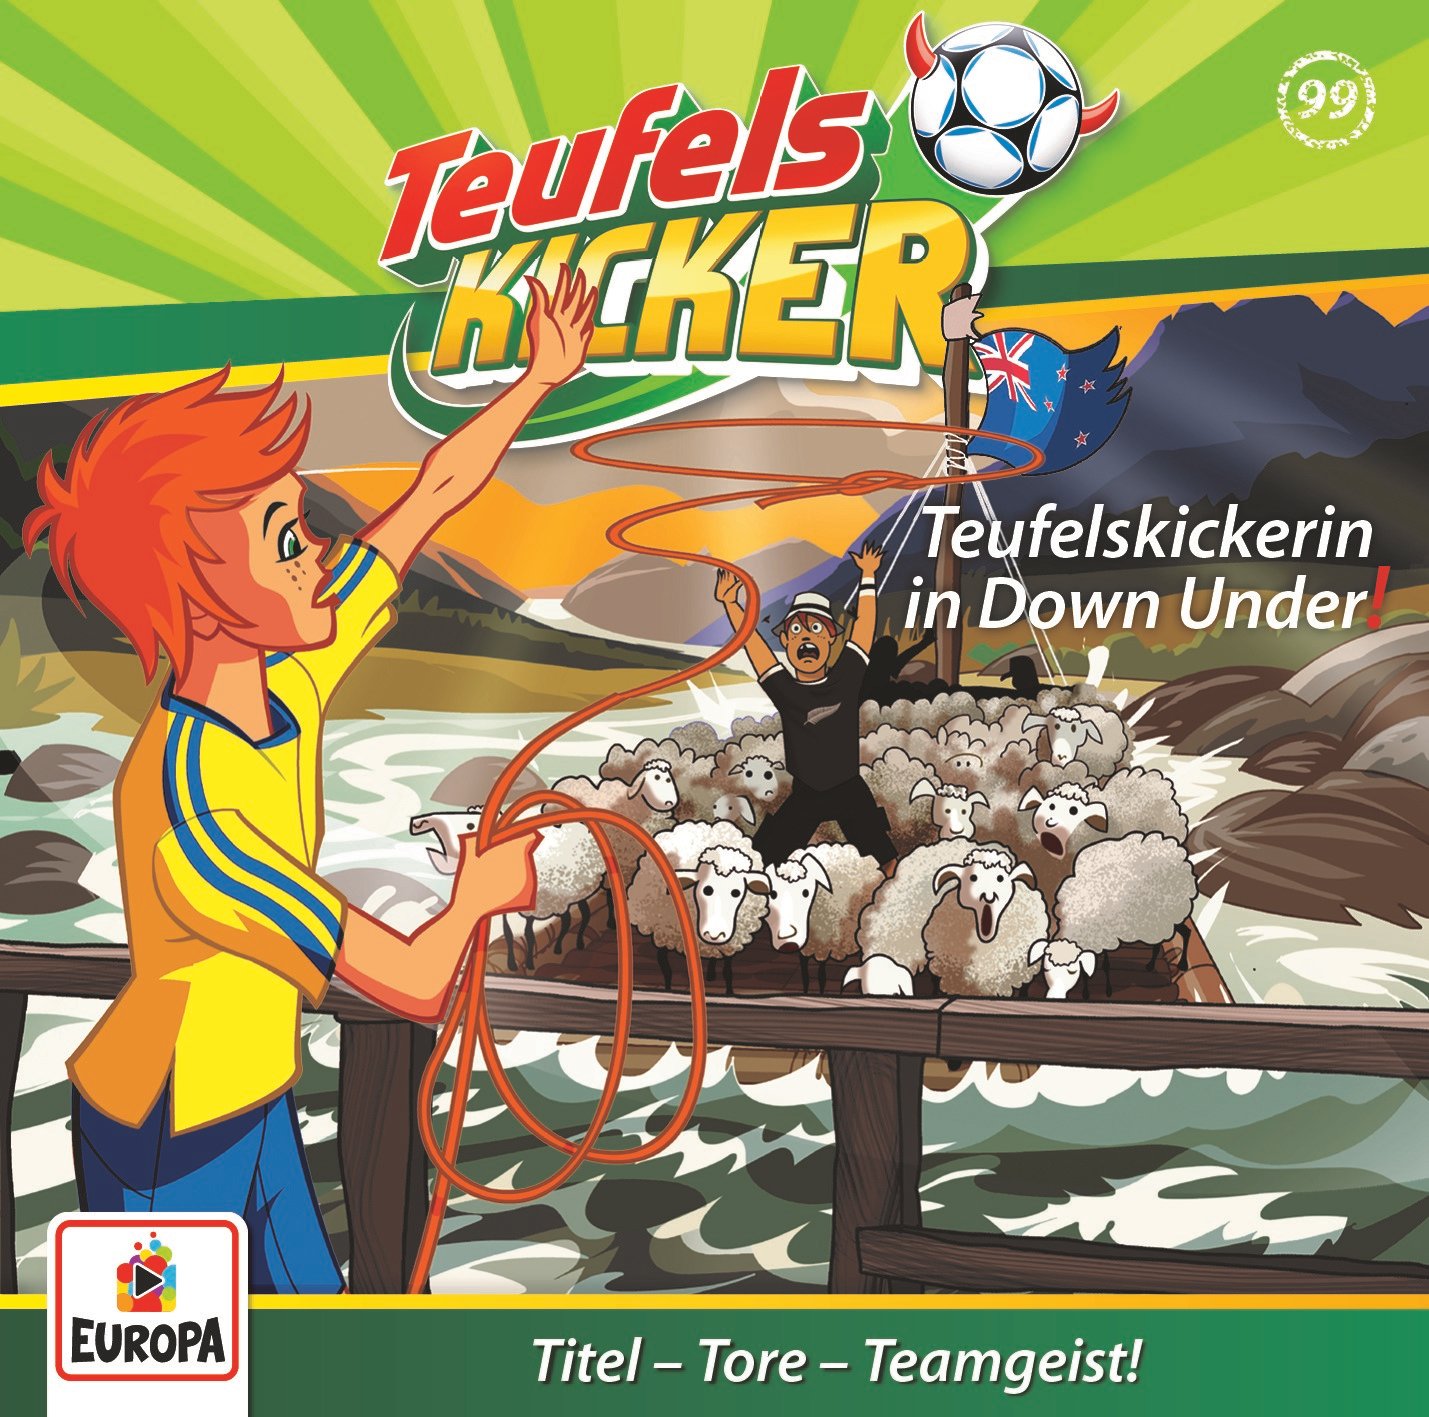 Teufelskicker  - Teufelskickerin in Down Under!